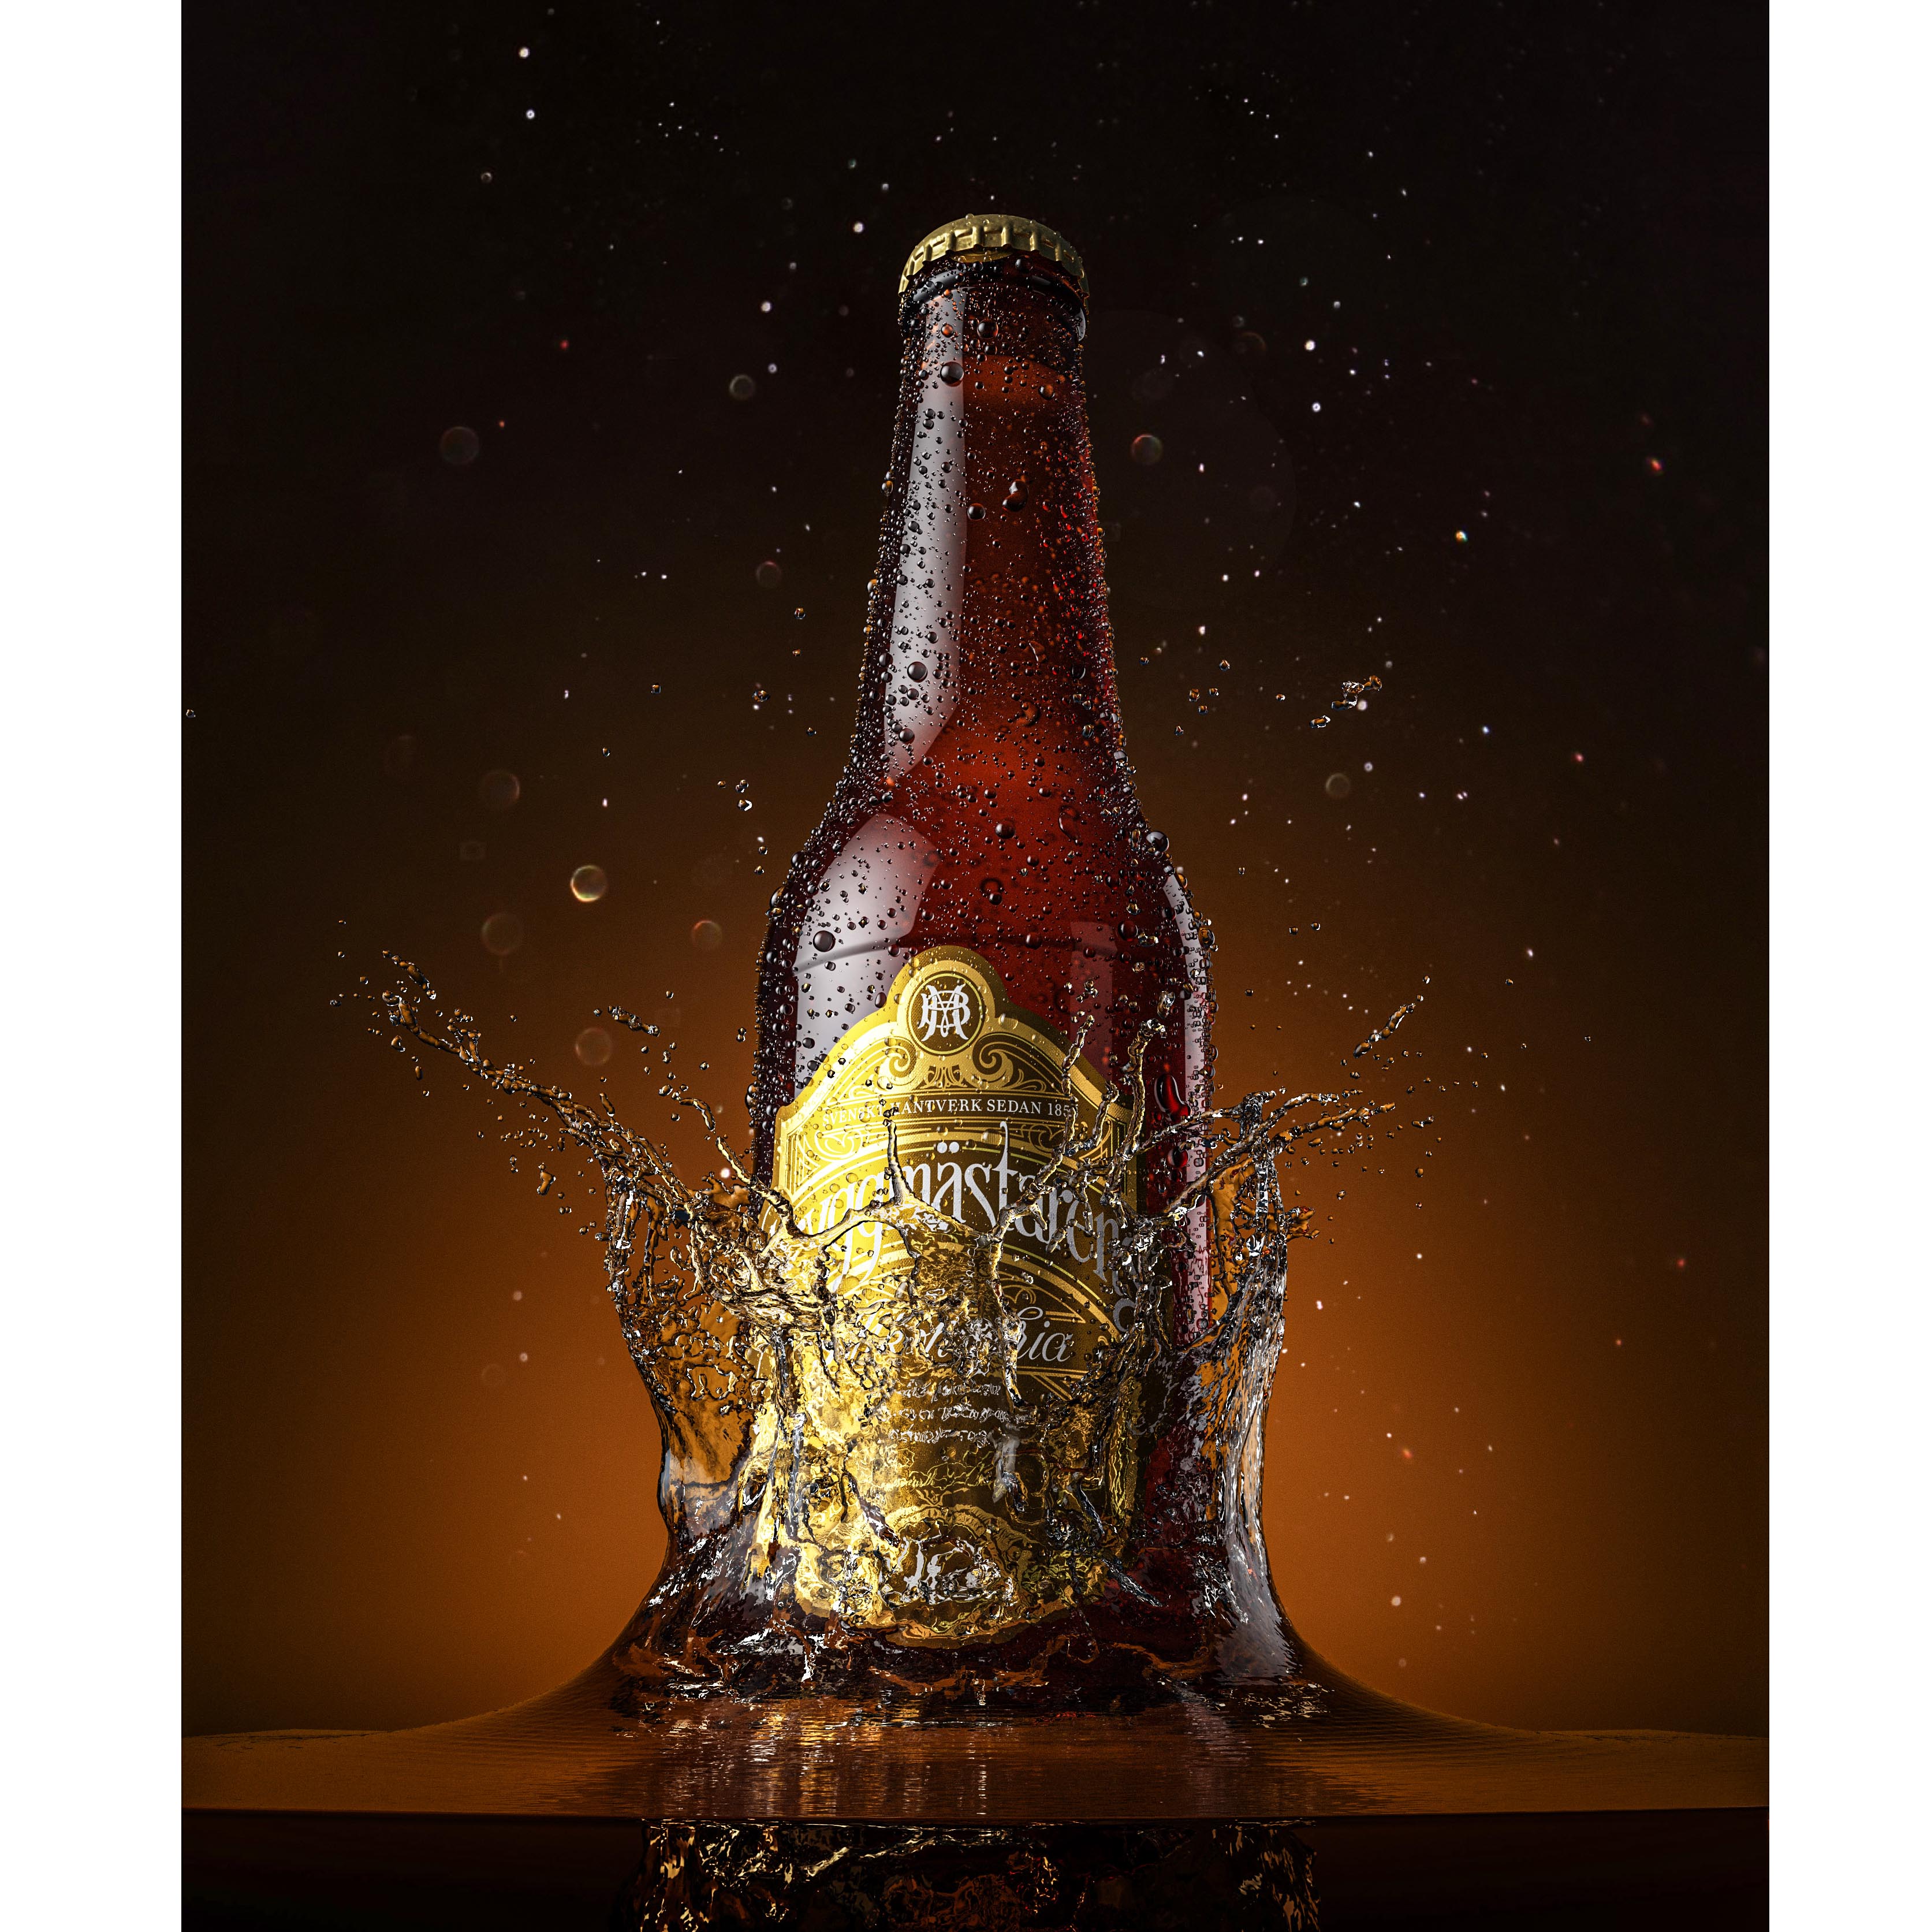 A bottle of beer is dropped in water simulation so it splashes gold, öl flaska åbro vatten skvätt simulering Åbro skrapan lager